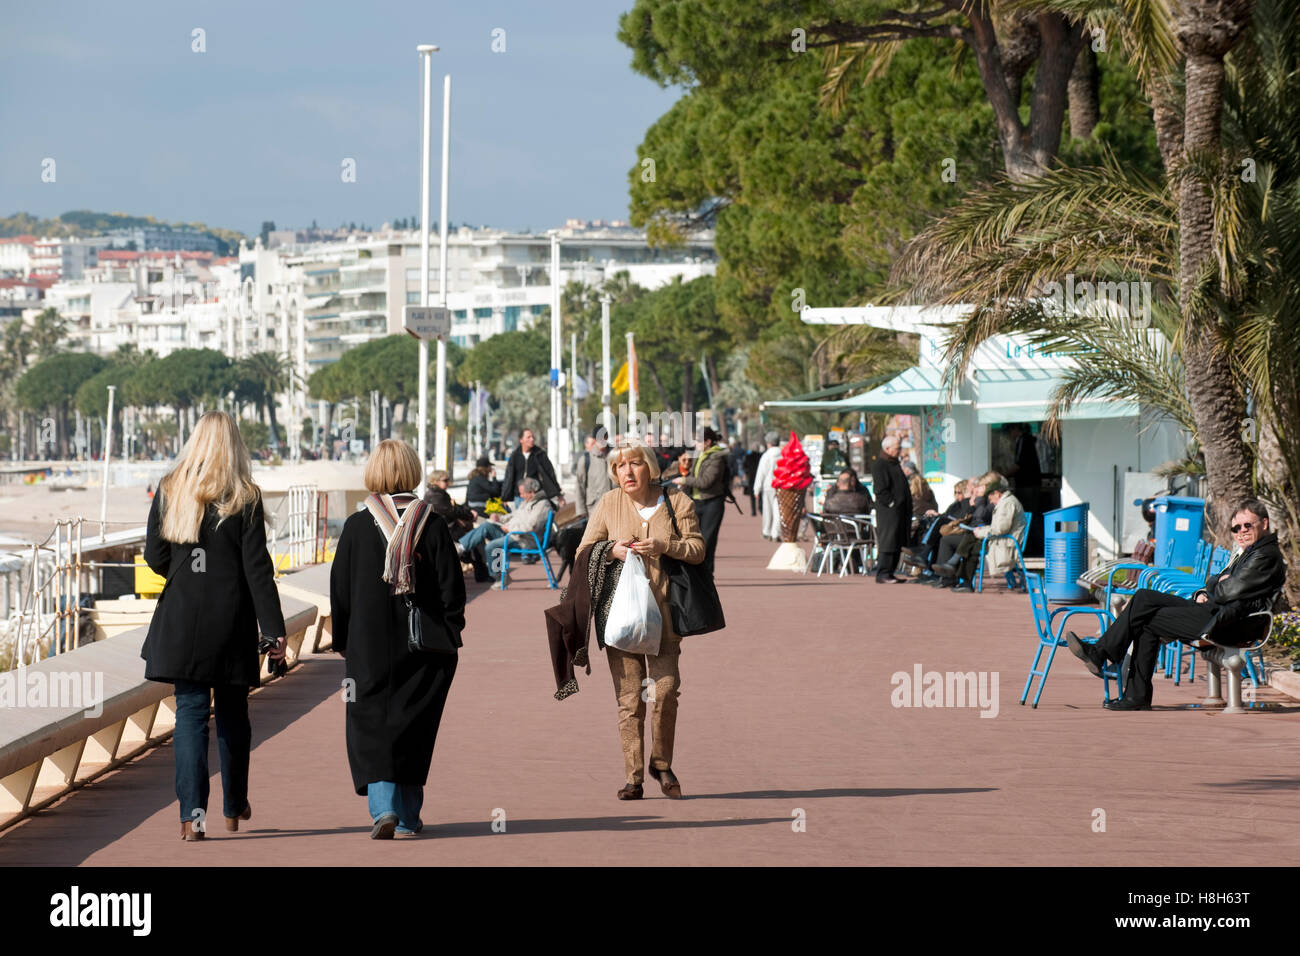 Frankreich, Cote d Azur, Cannes, Boulevard de la Croisette, elegante Flanierpromenade Foto Stock